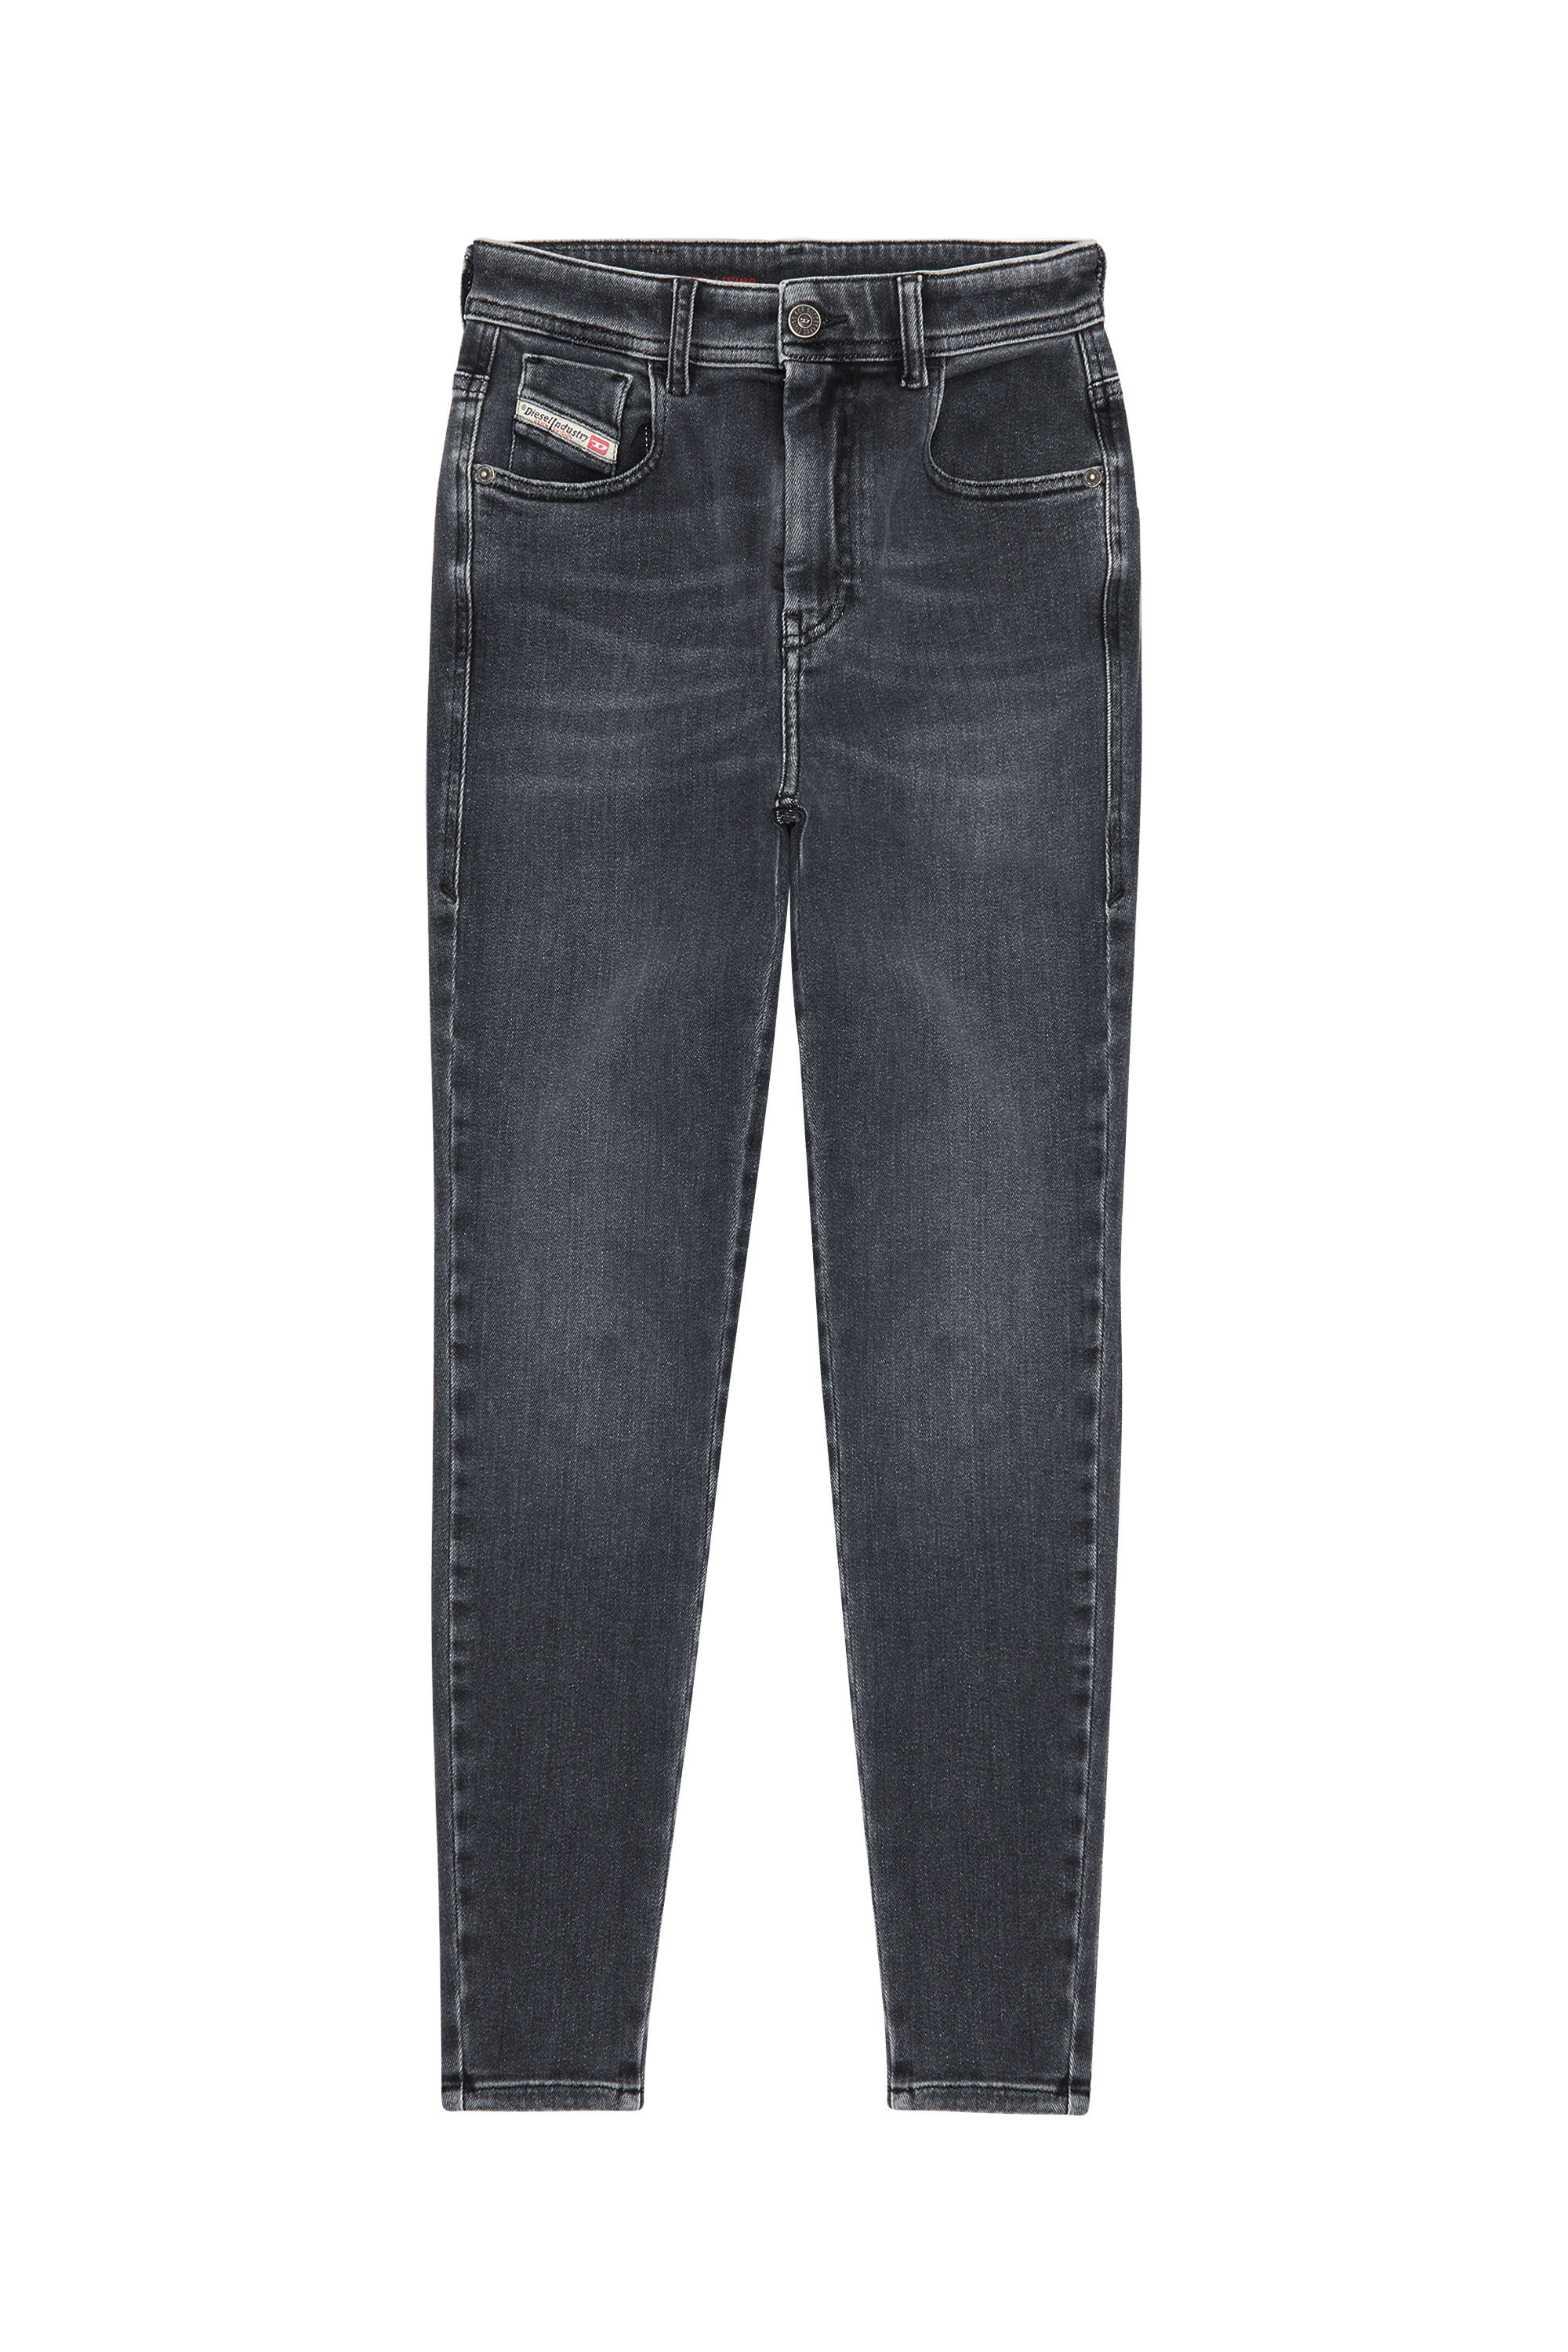 Diesel - Super skinny Jeans 1984 Slandy-High 09D61, Black/Dark grey - Image 2